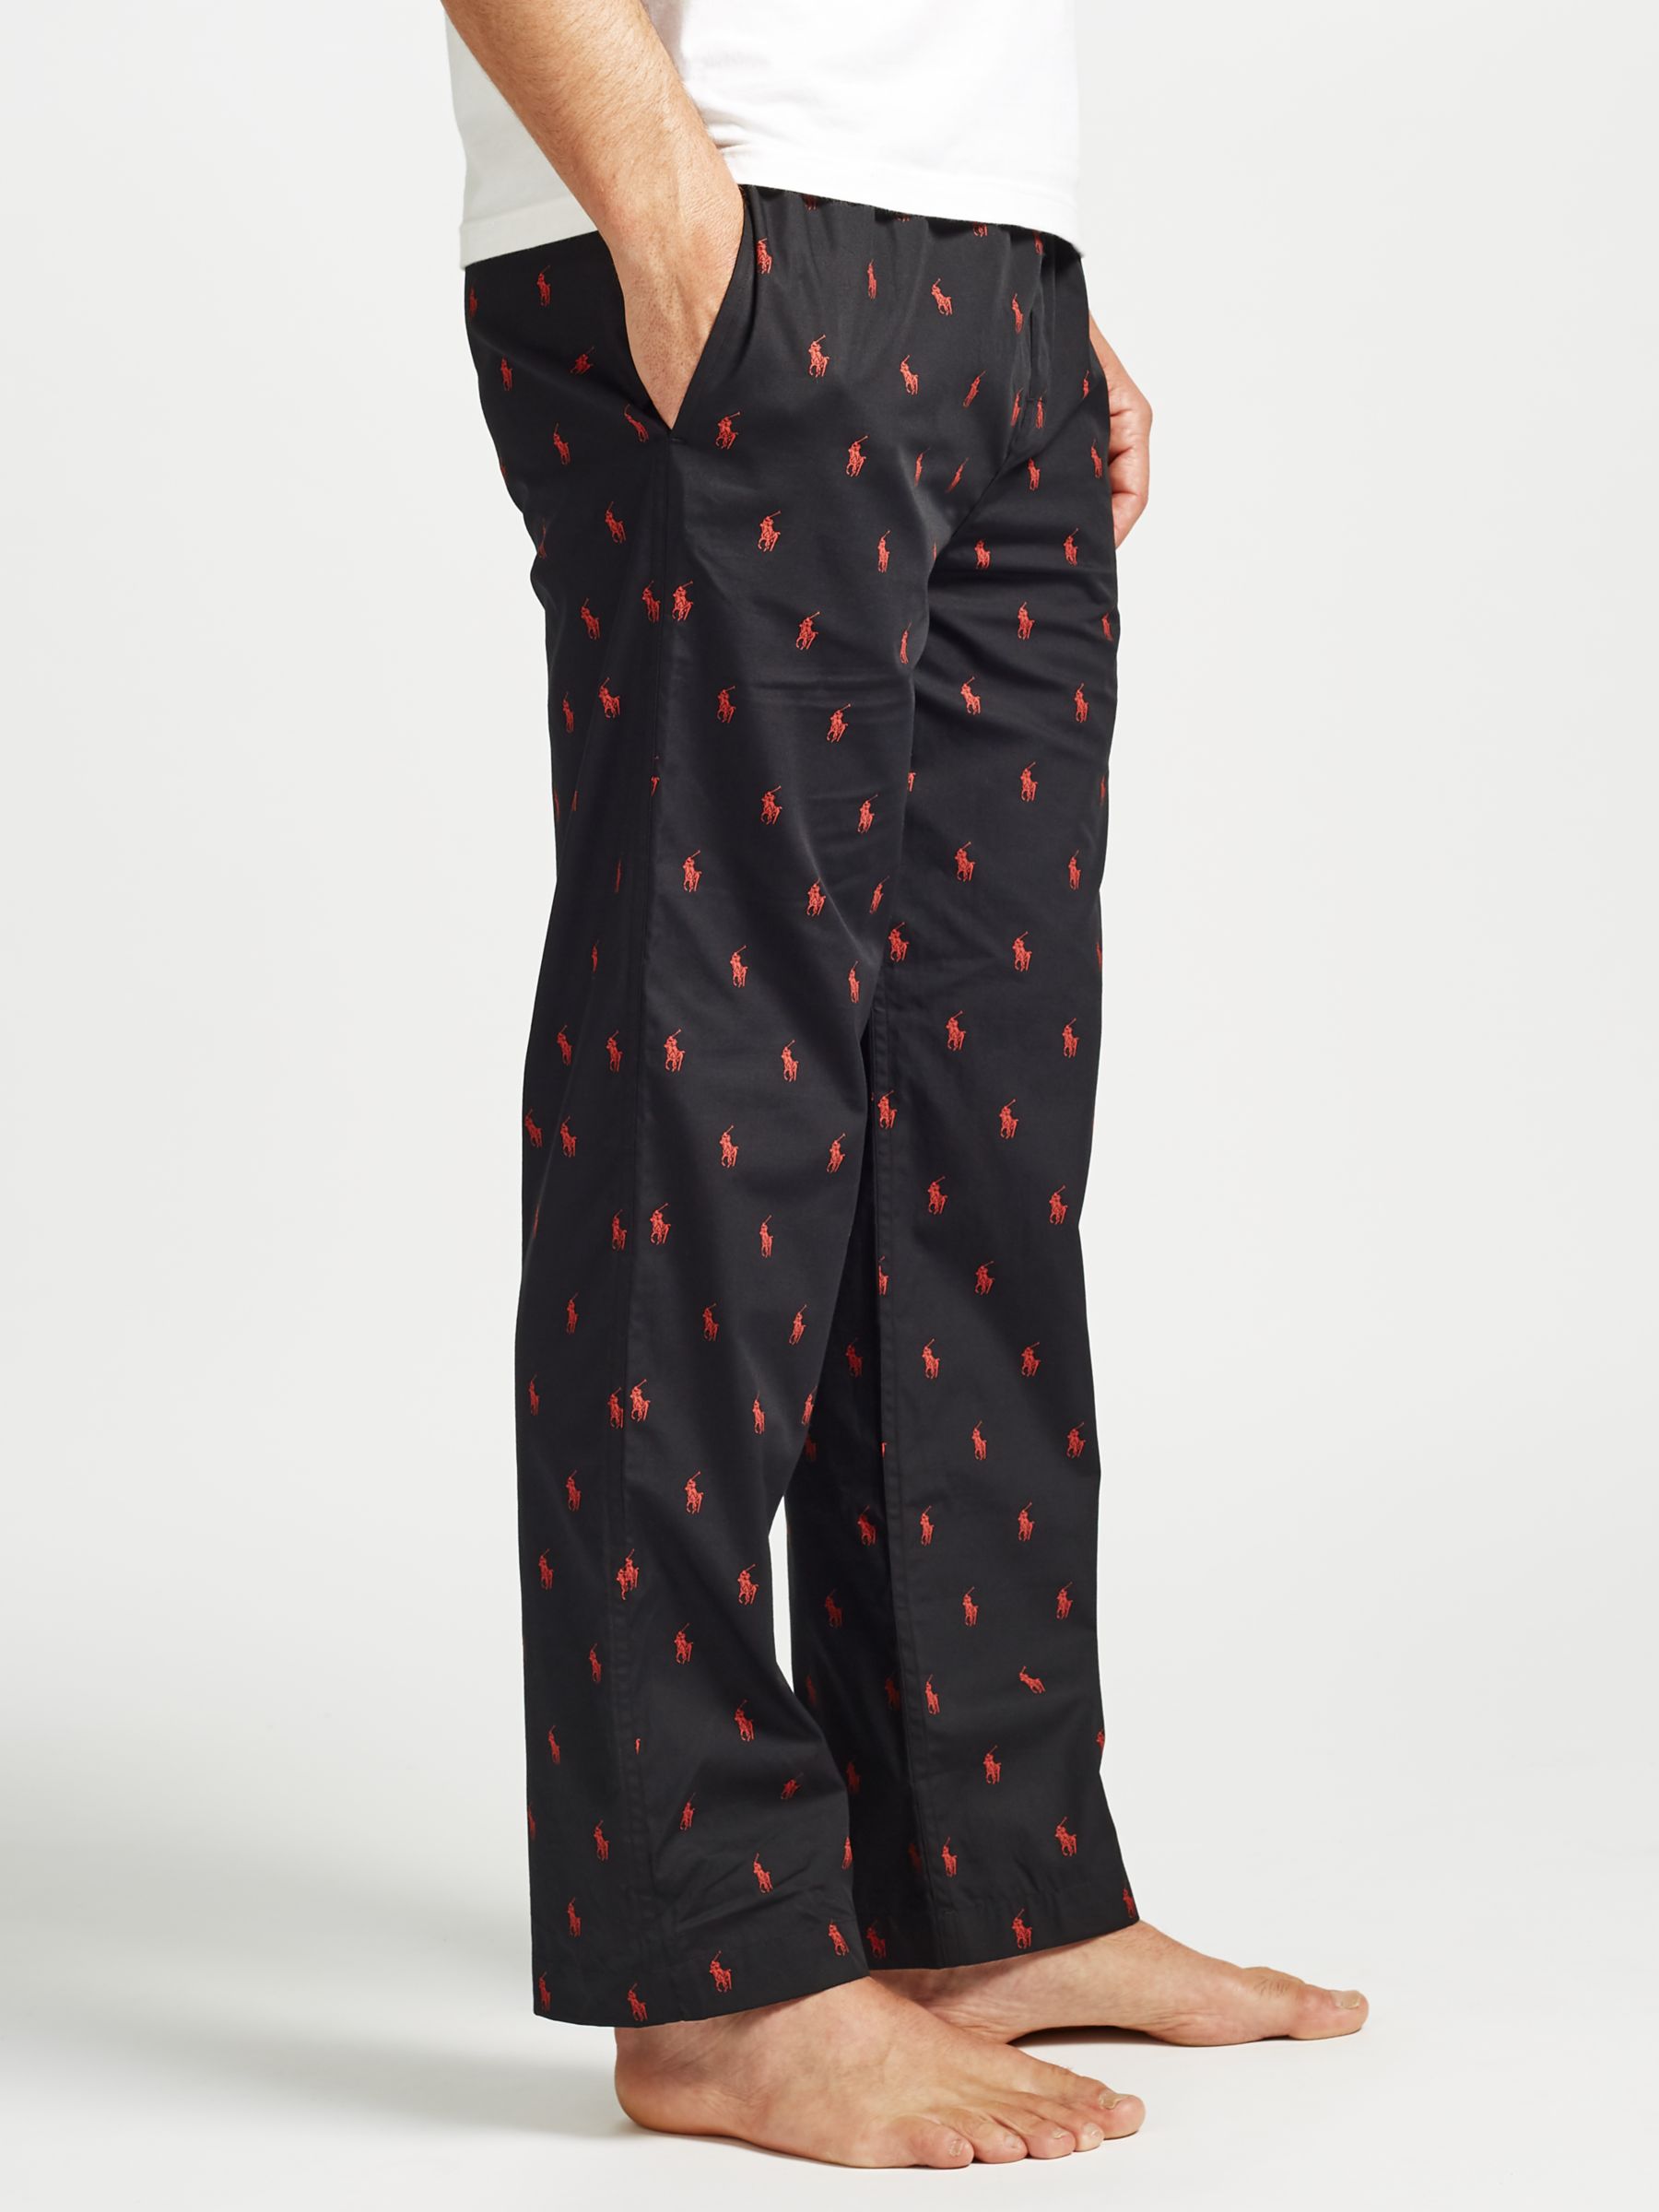 polo pajama pants black and red